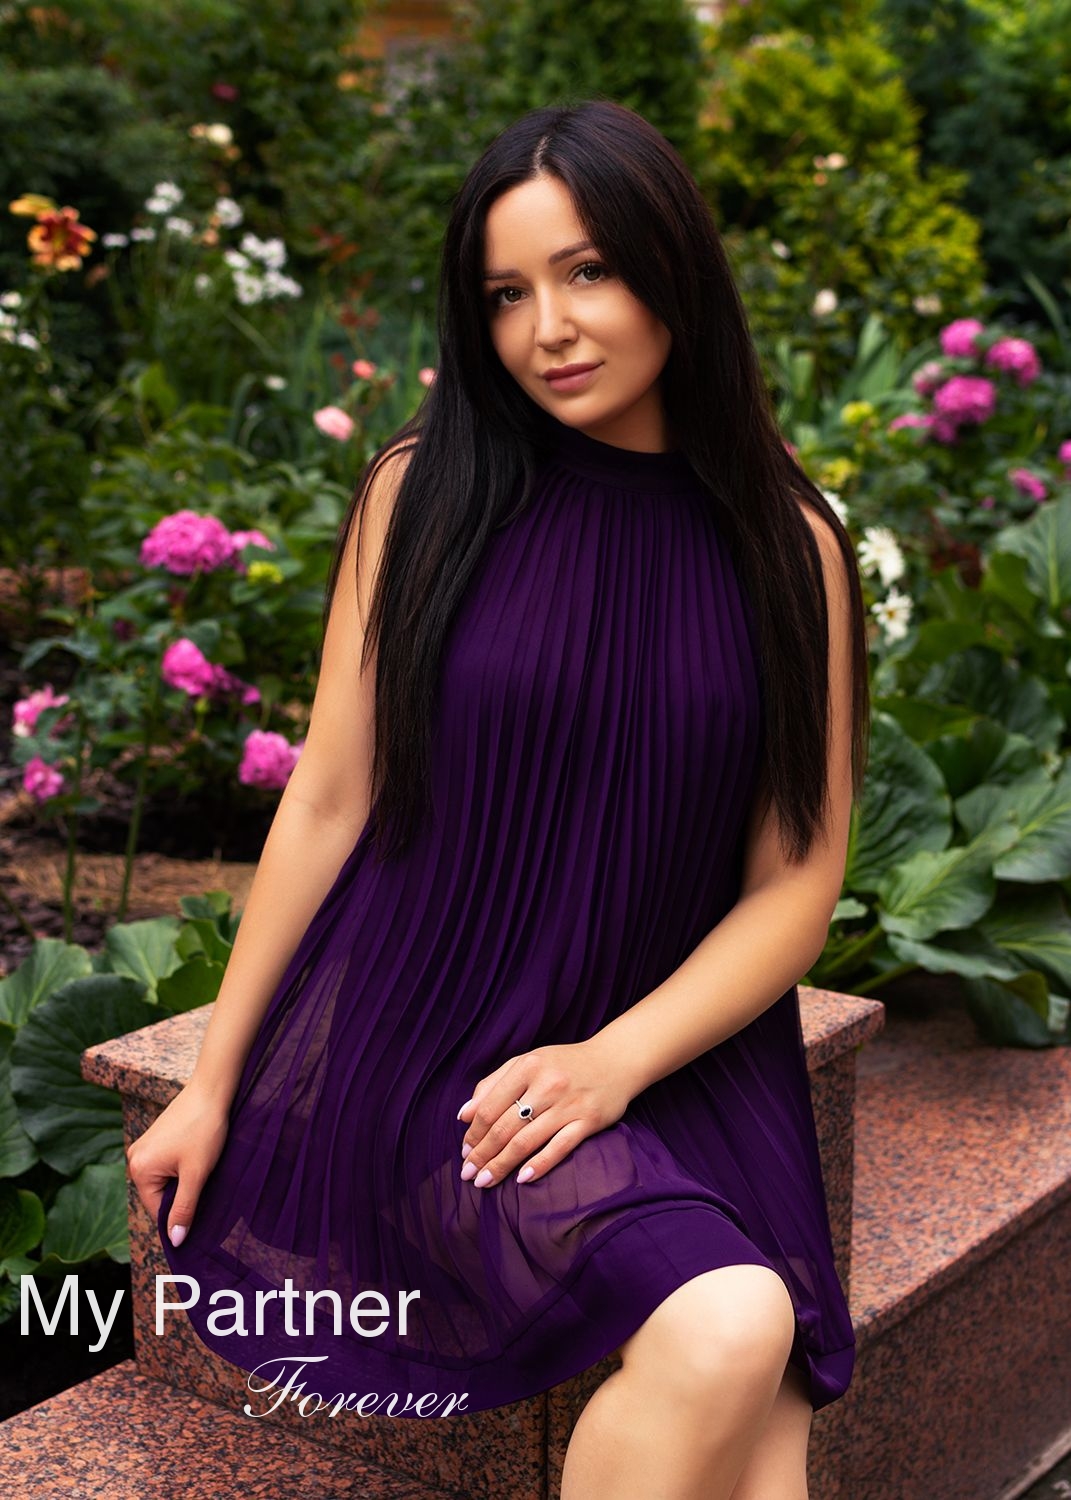 Gorgeous Lady from Ukraine - Polina from Kiev, Ukraine